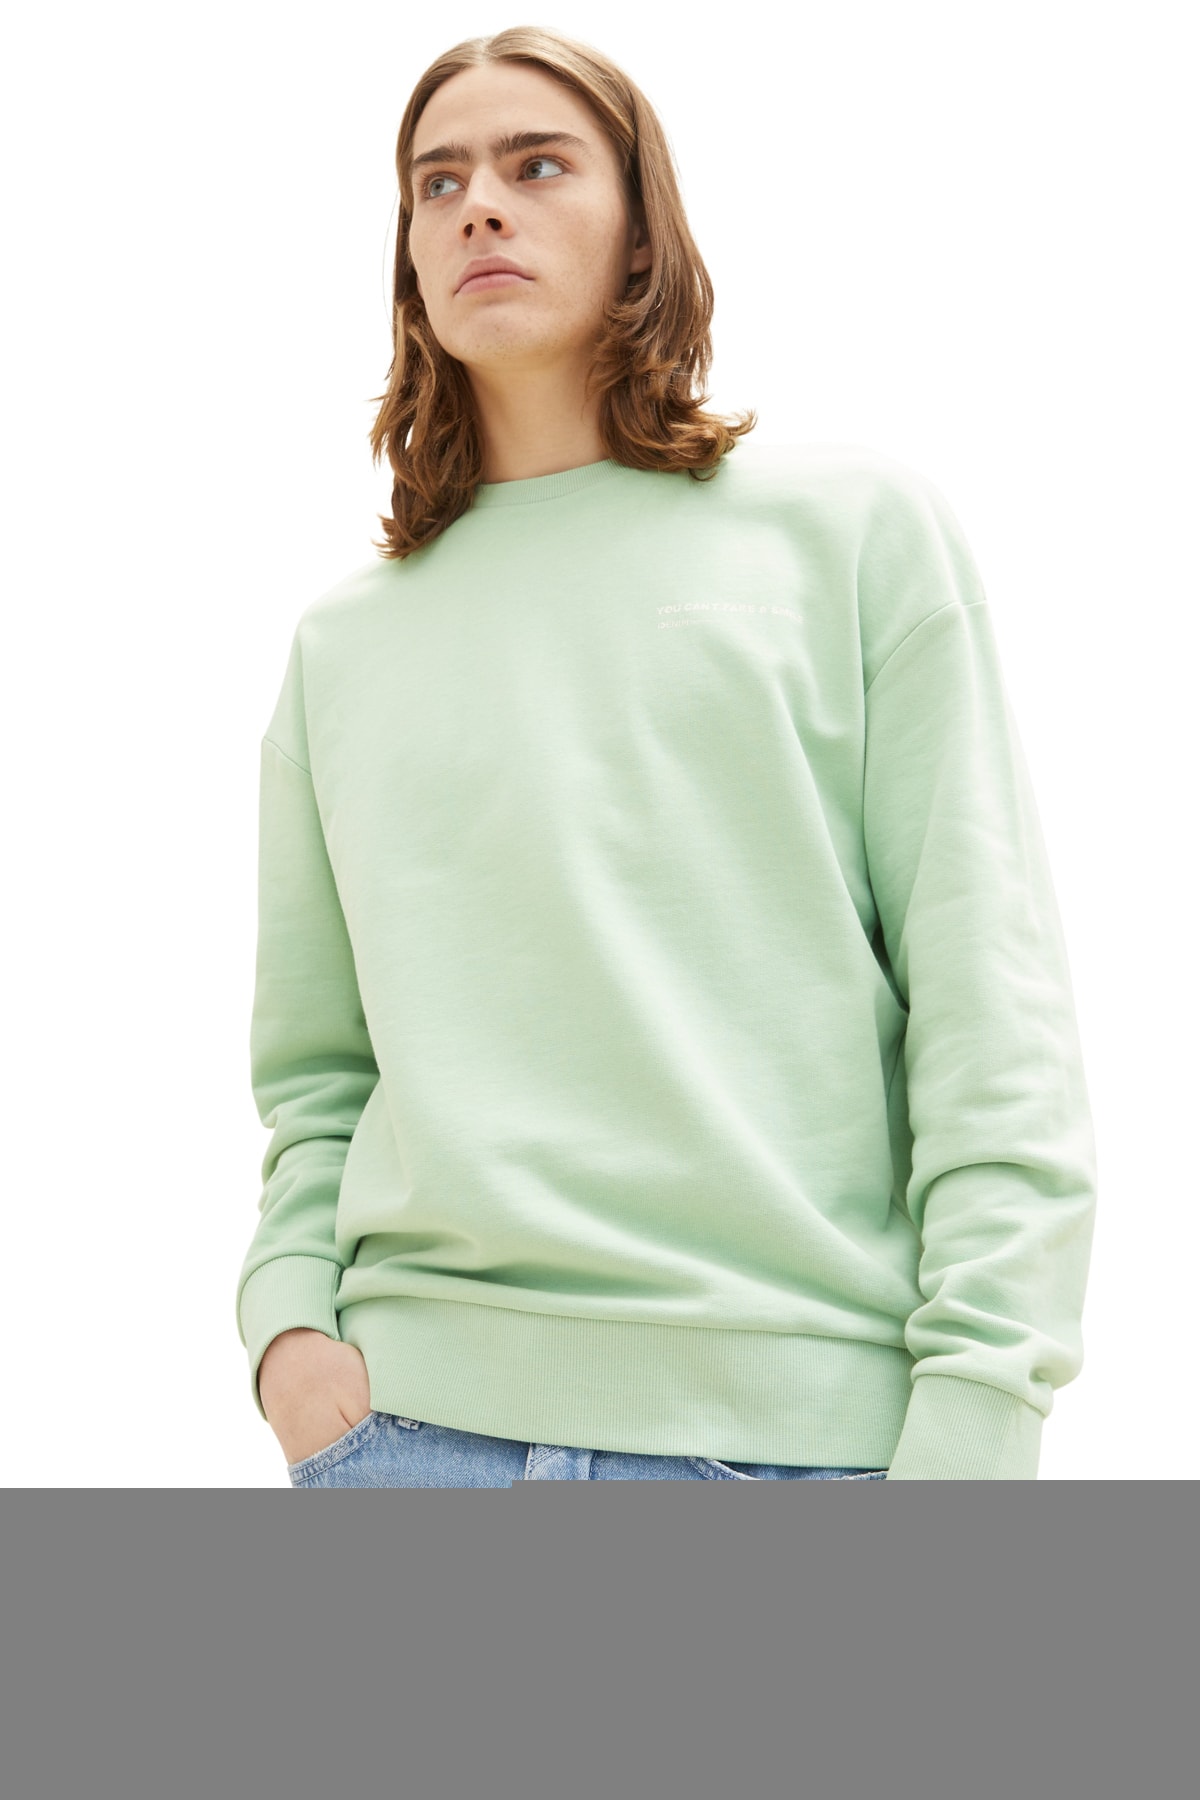 Мужская футболка спокойного зеленого цвета Tom Tailor Denim, темно-синий мужской домашний комплект серый с темно синими шортами tom tailor 70973 5609 811 m 50